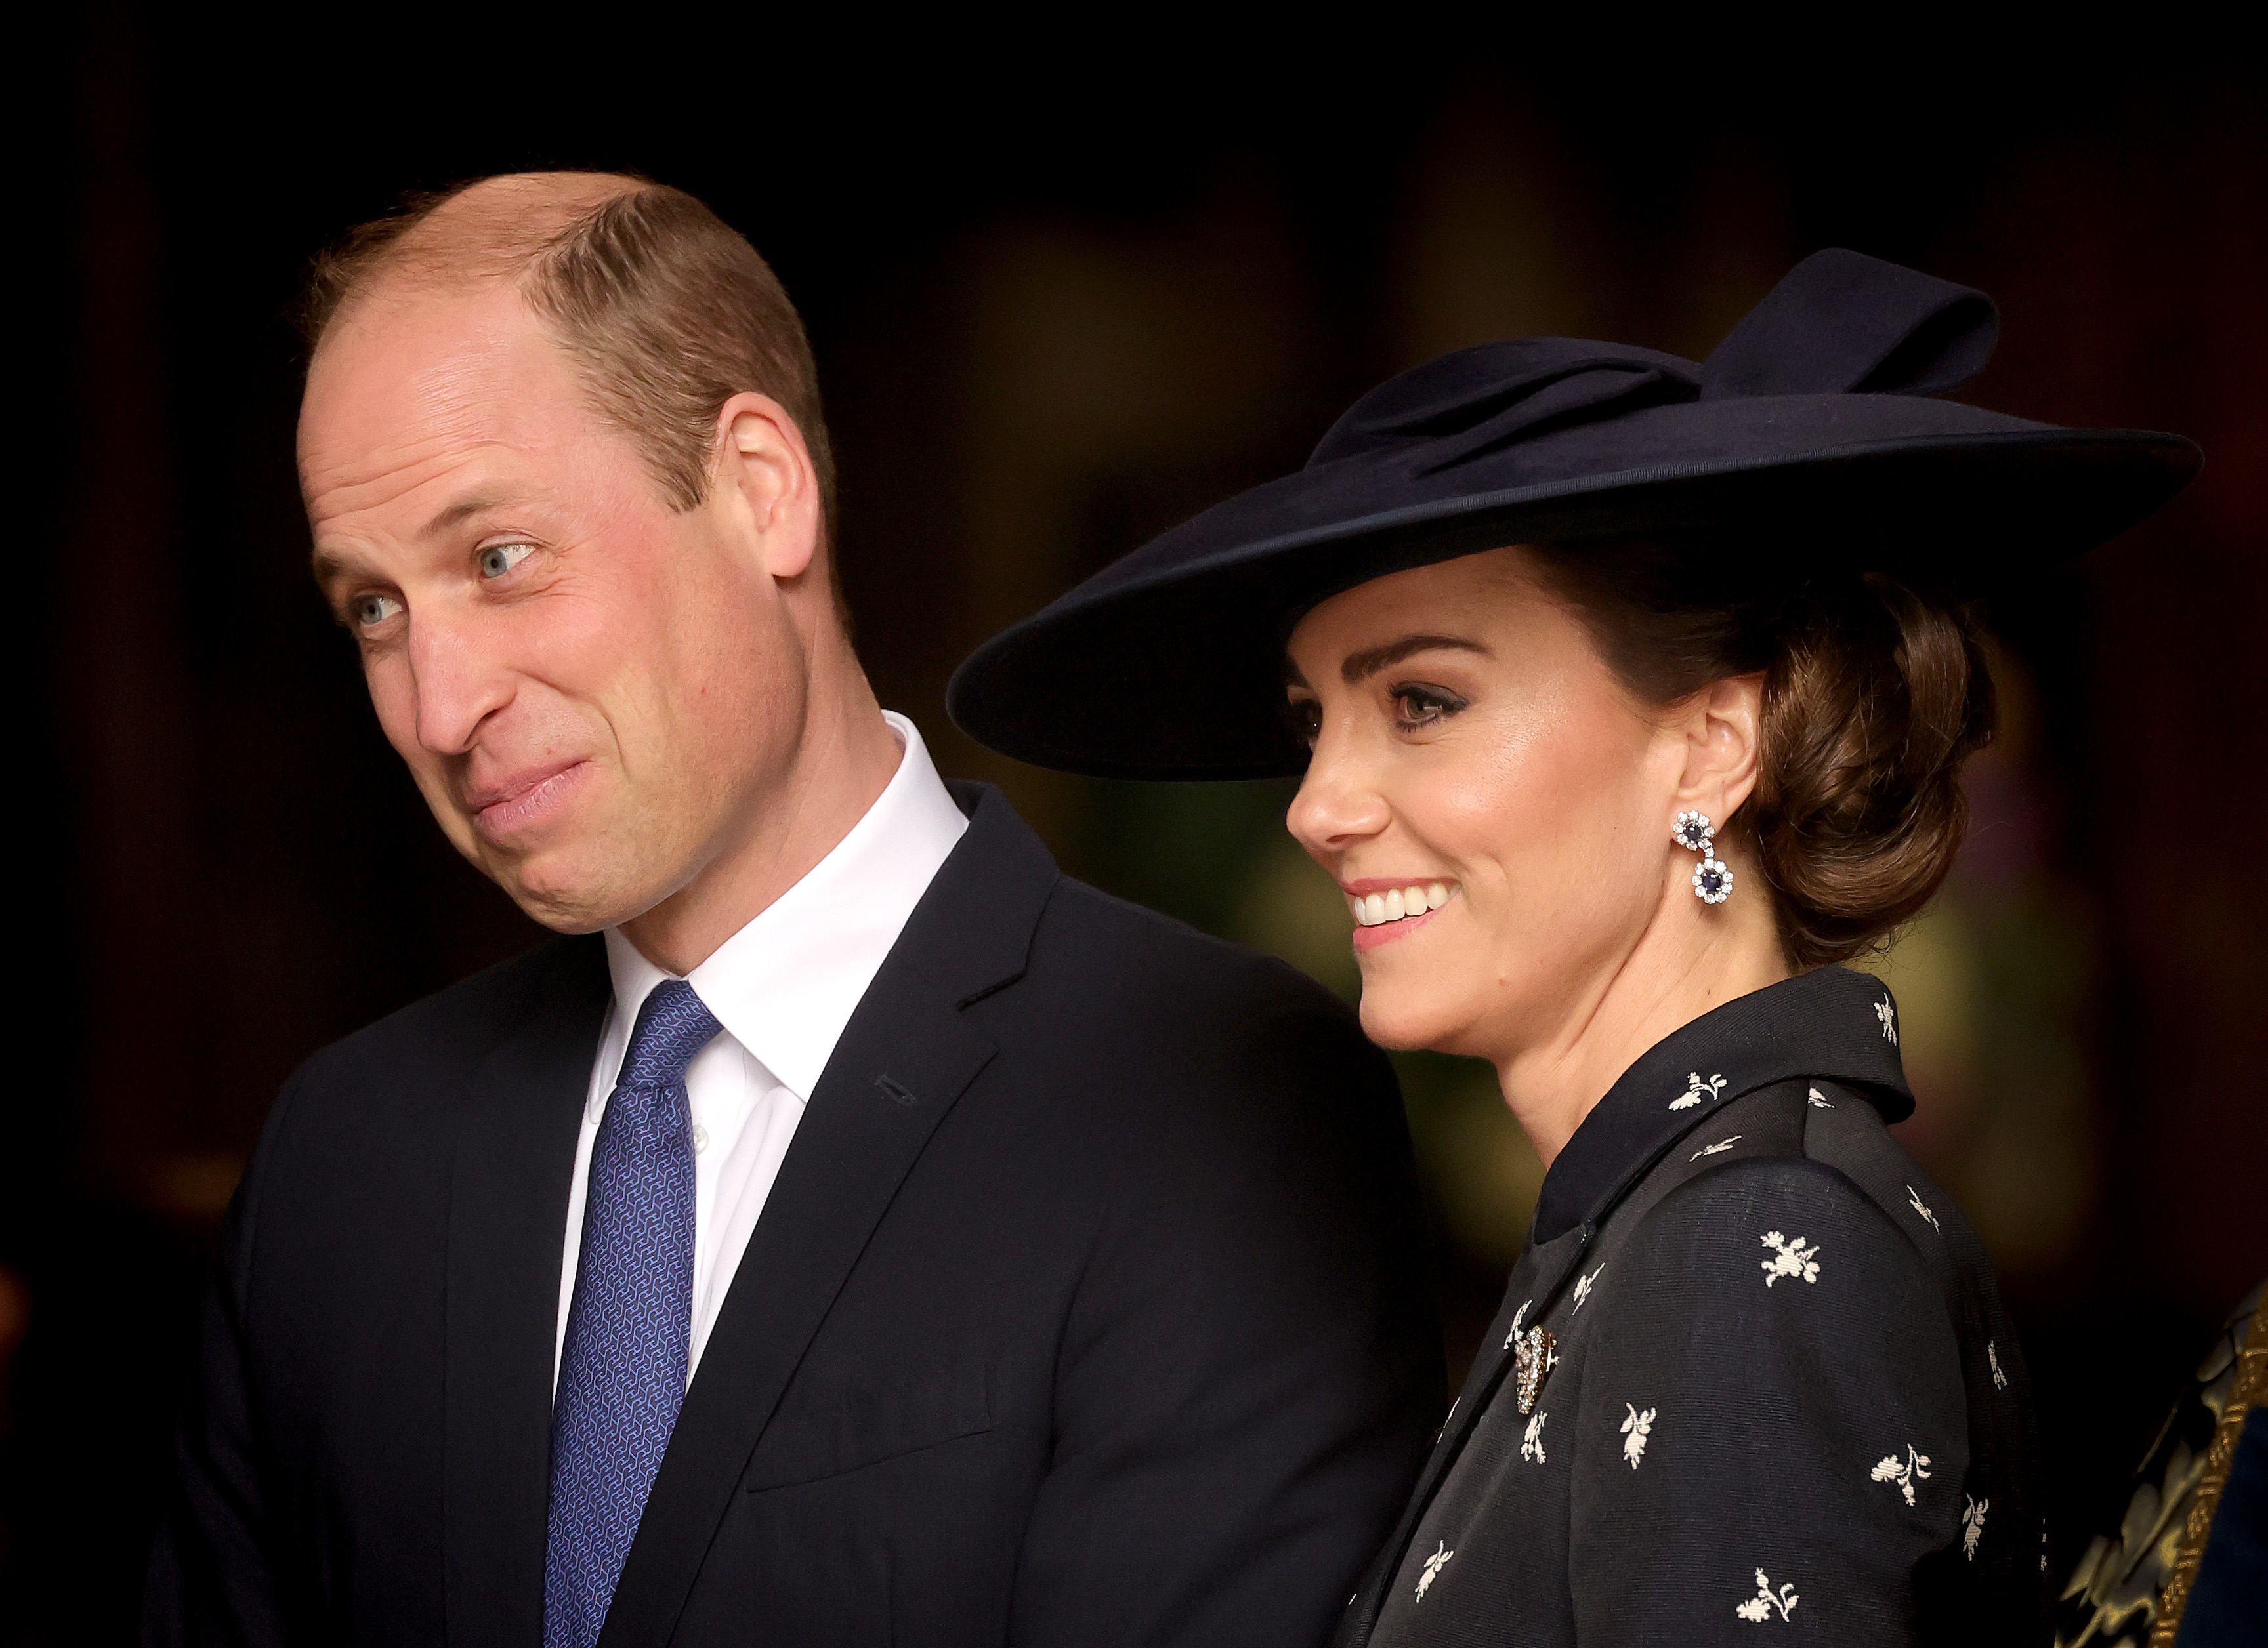 lanthan Konflikt drikke Prince William's 'Look of Love' for Kate Middleton Goes Viral